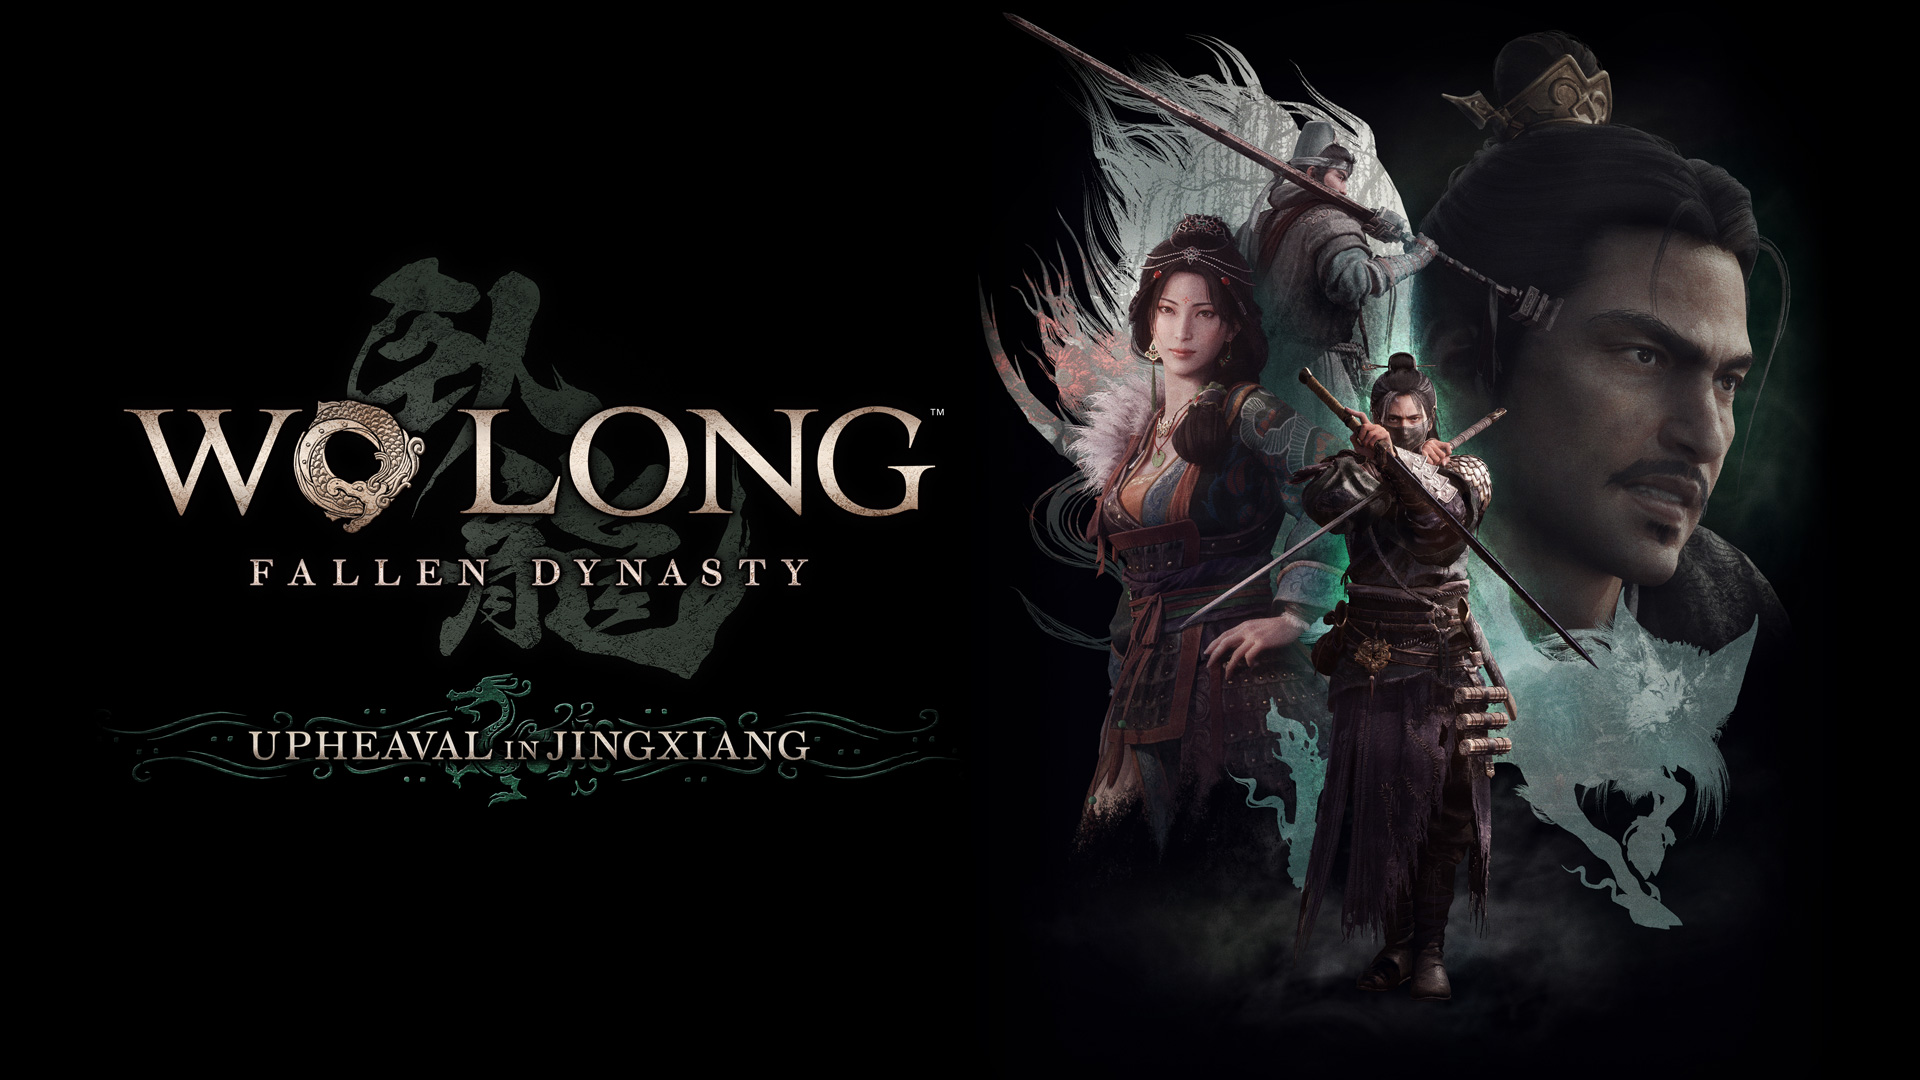 Wo Long: Fallen Dynasty DLC 3 — Upheaval in Jingxiang Launching Next Week